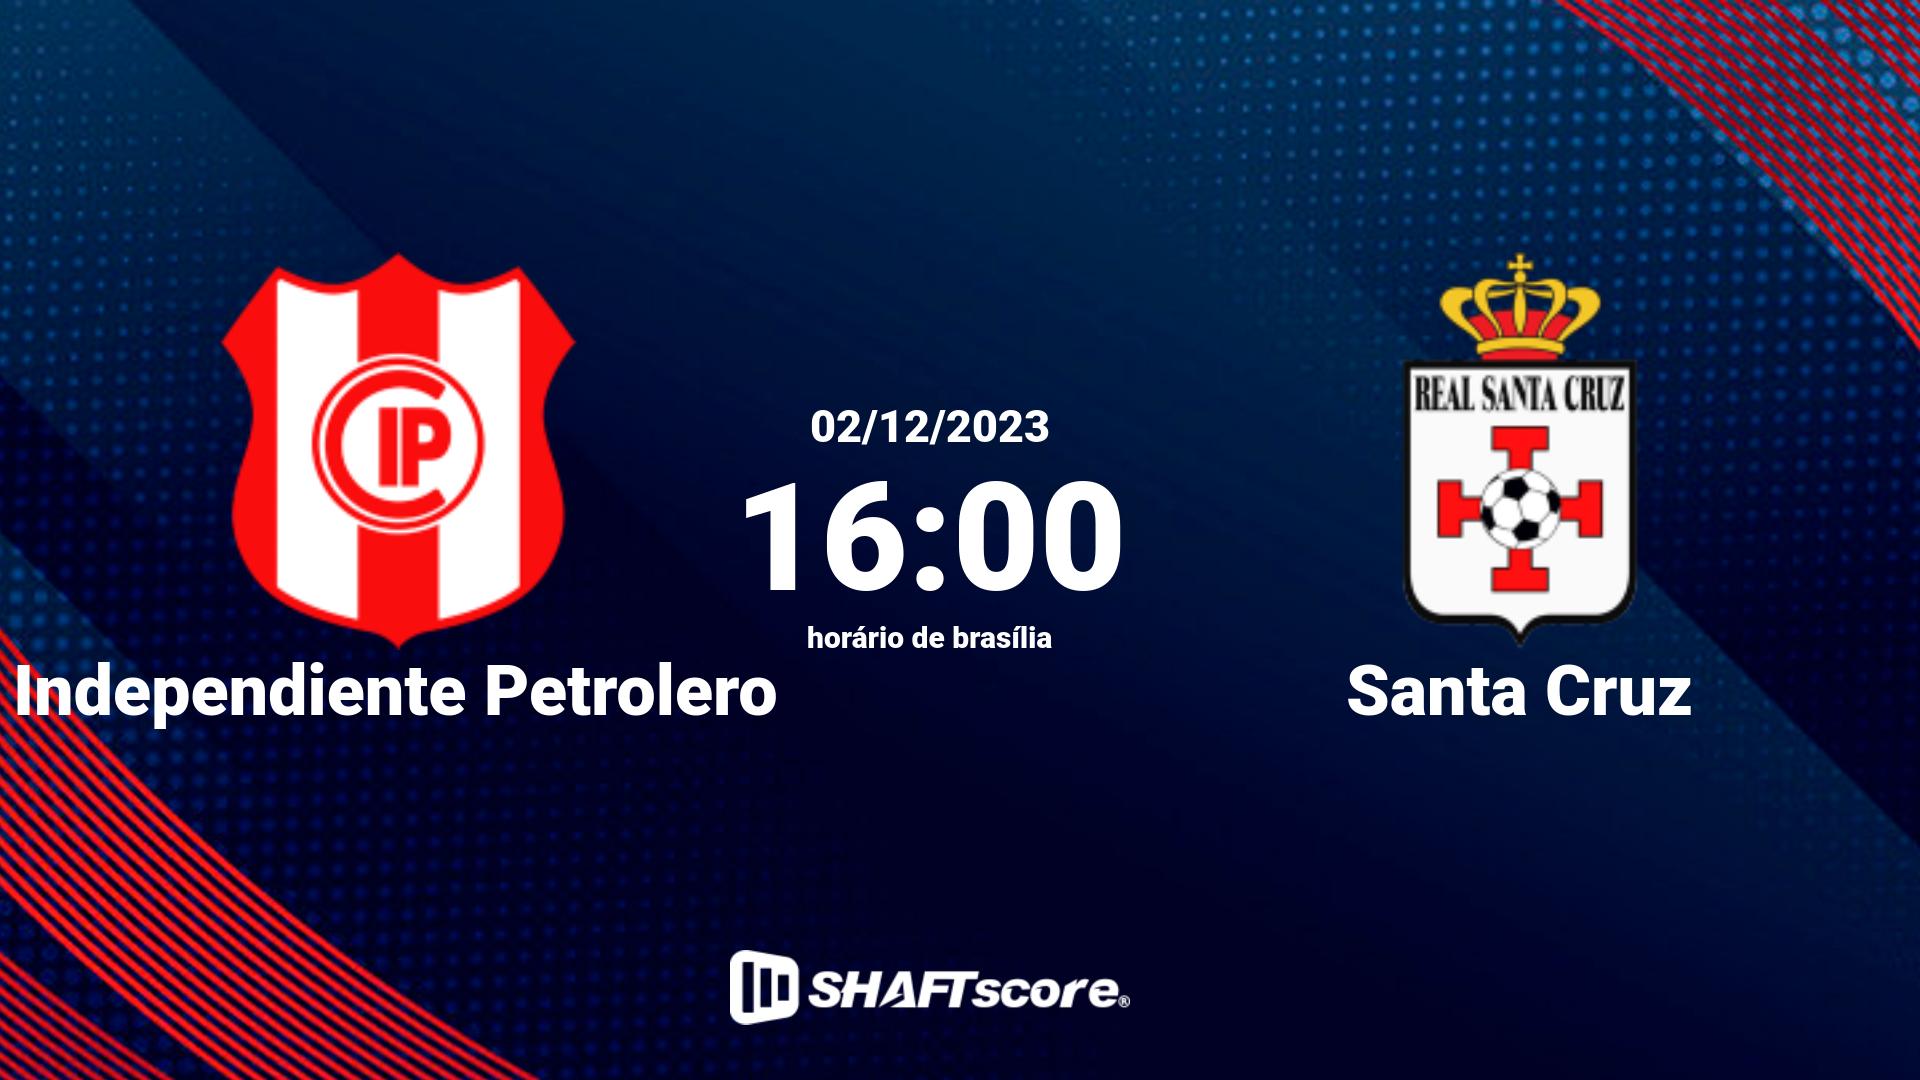 Estatísticas do jogo Independiente Petrolero vs Santa Cruz 02.12 16:00